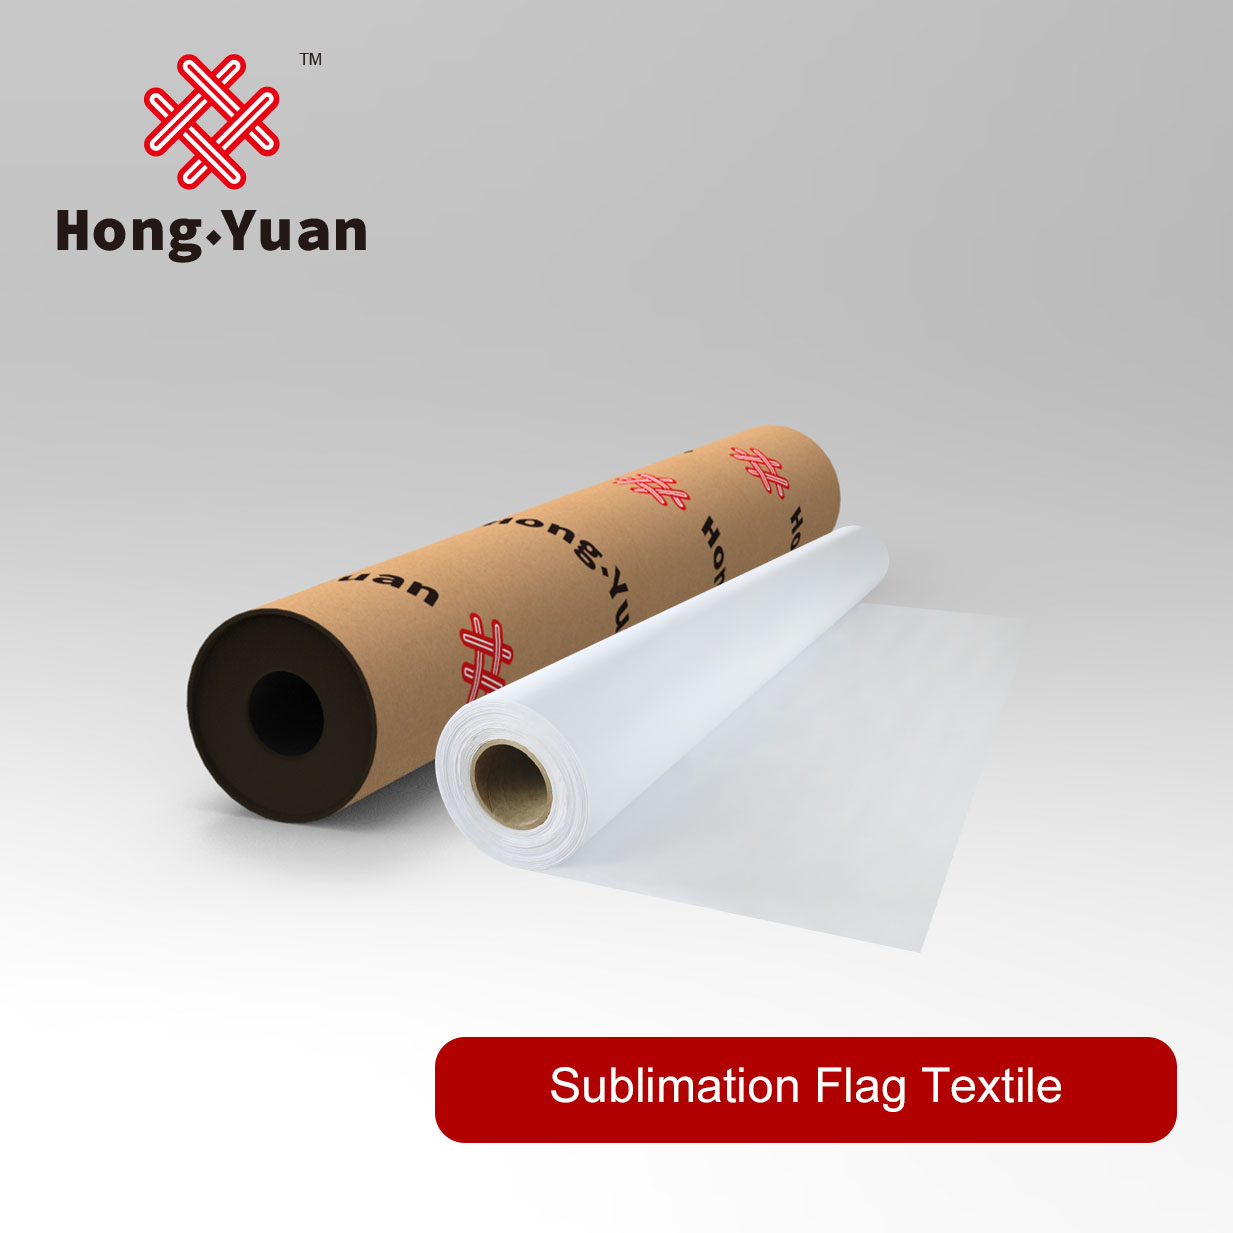 Sublimation Flag Textile SFT200